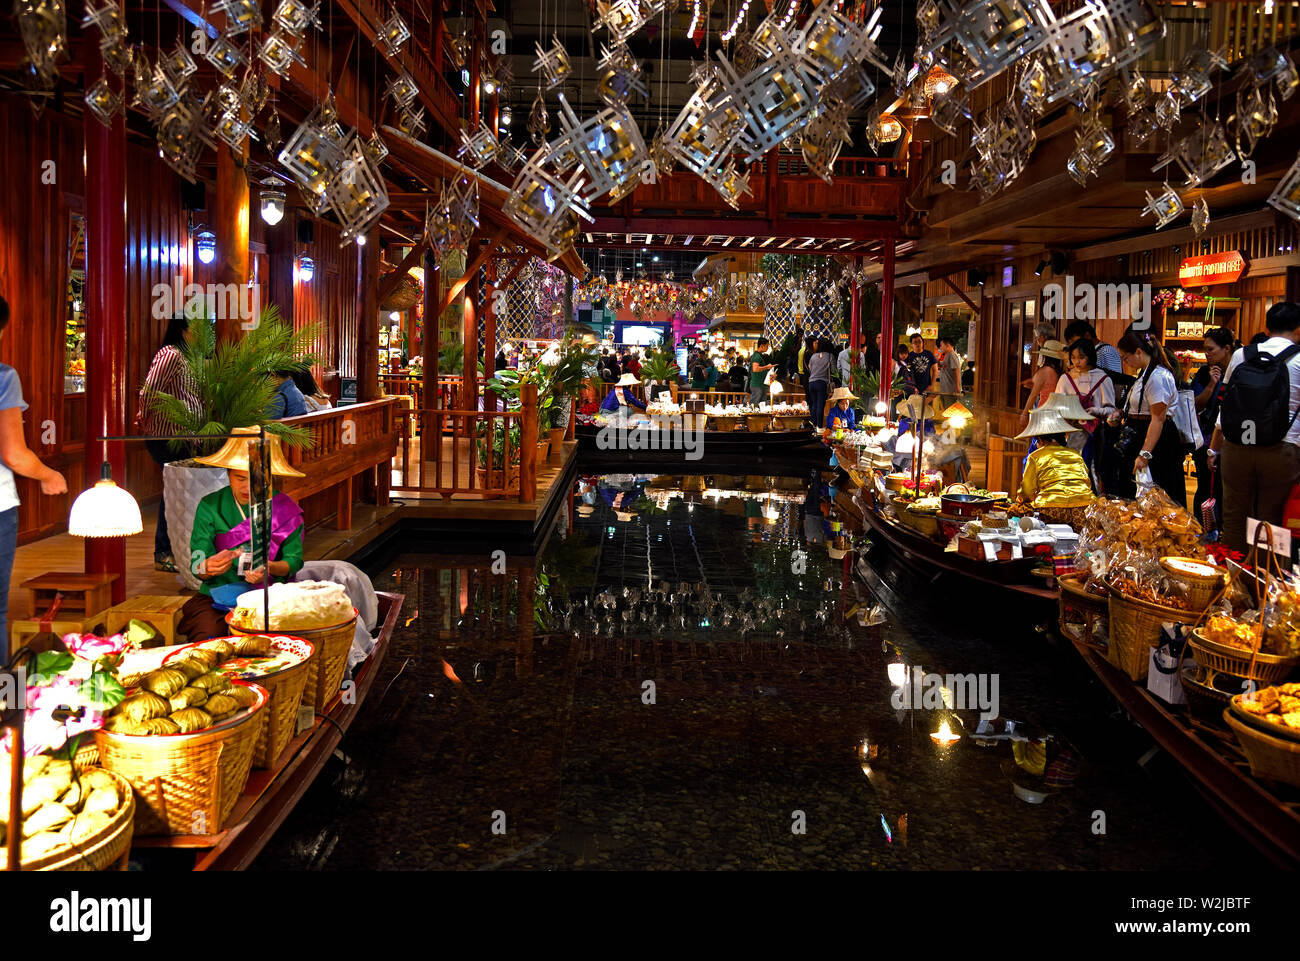 icon siam mall bangkok floating market｜TikTok Search